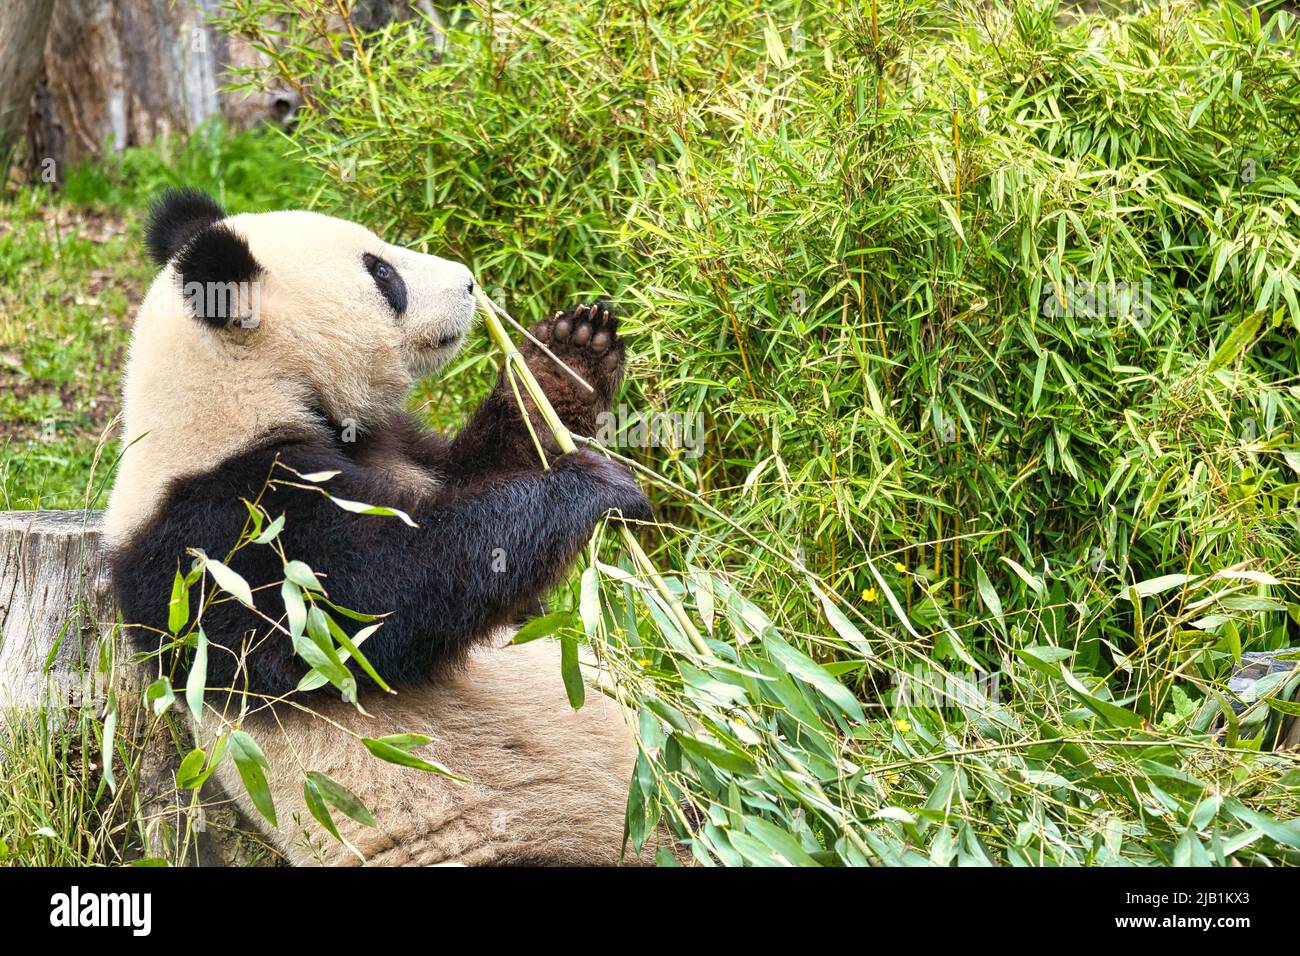 grand panda assis manger du bambou. Espèces en voie de disparition. Un mammifère noir et blanc qui ressemble à un ours en peluche. Photo profonde d'un ours rare. Banque D'Images